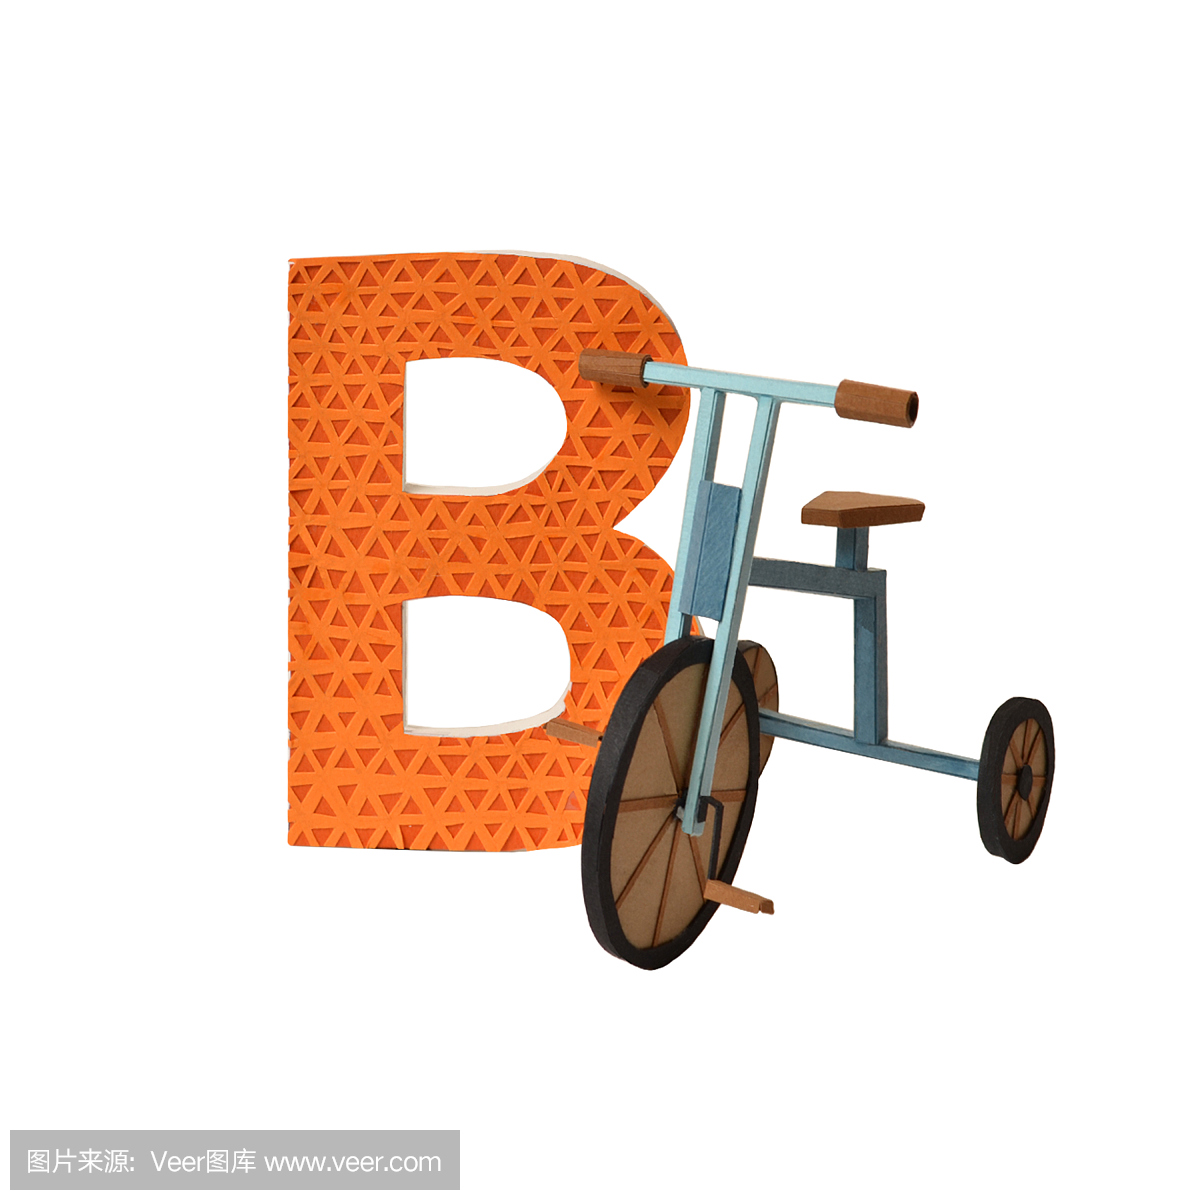 俄语字母V和自行车